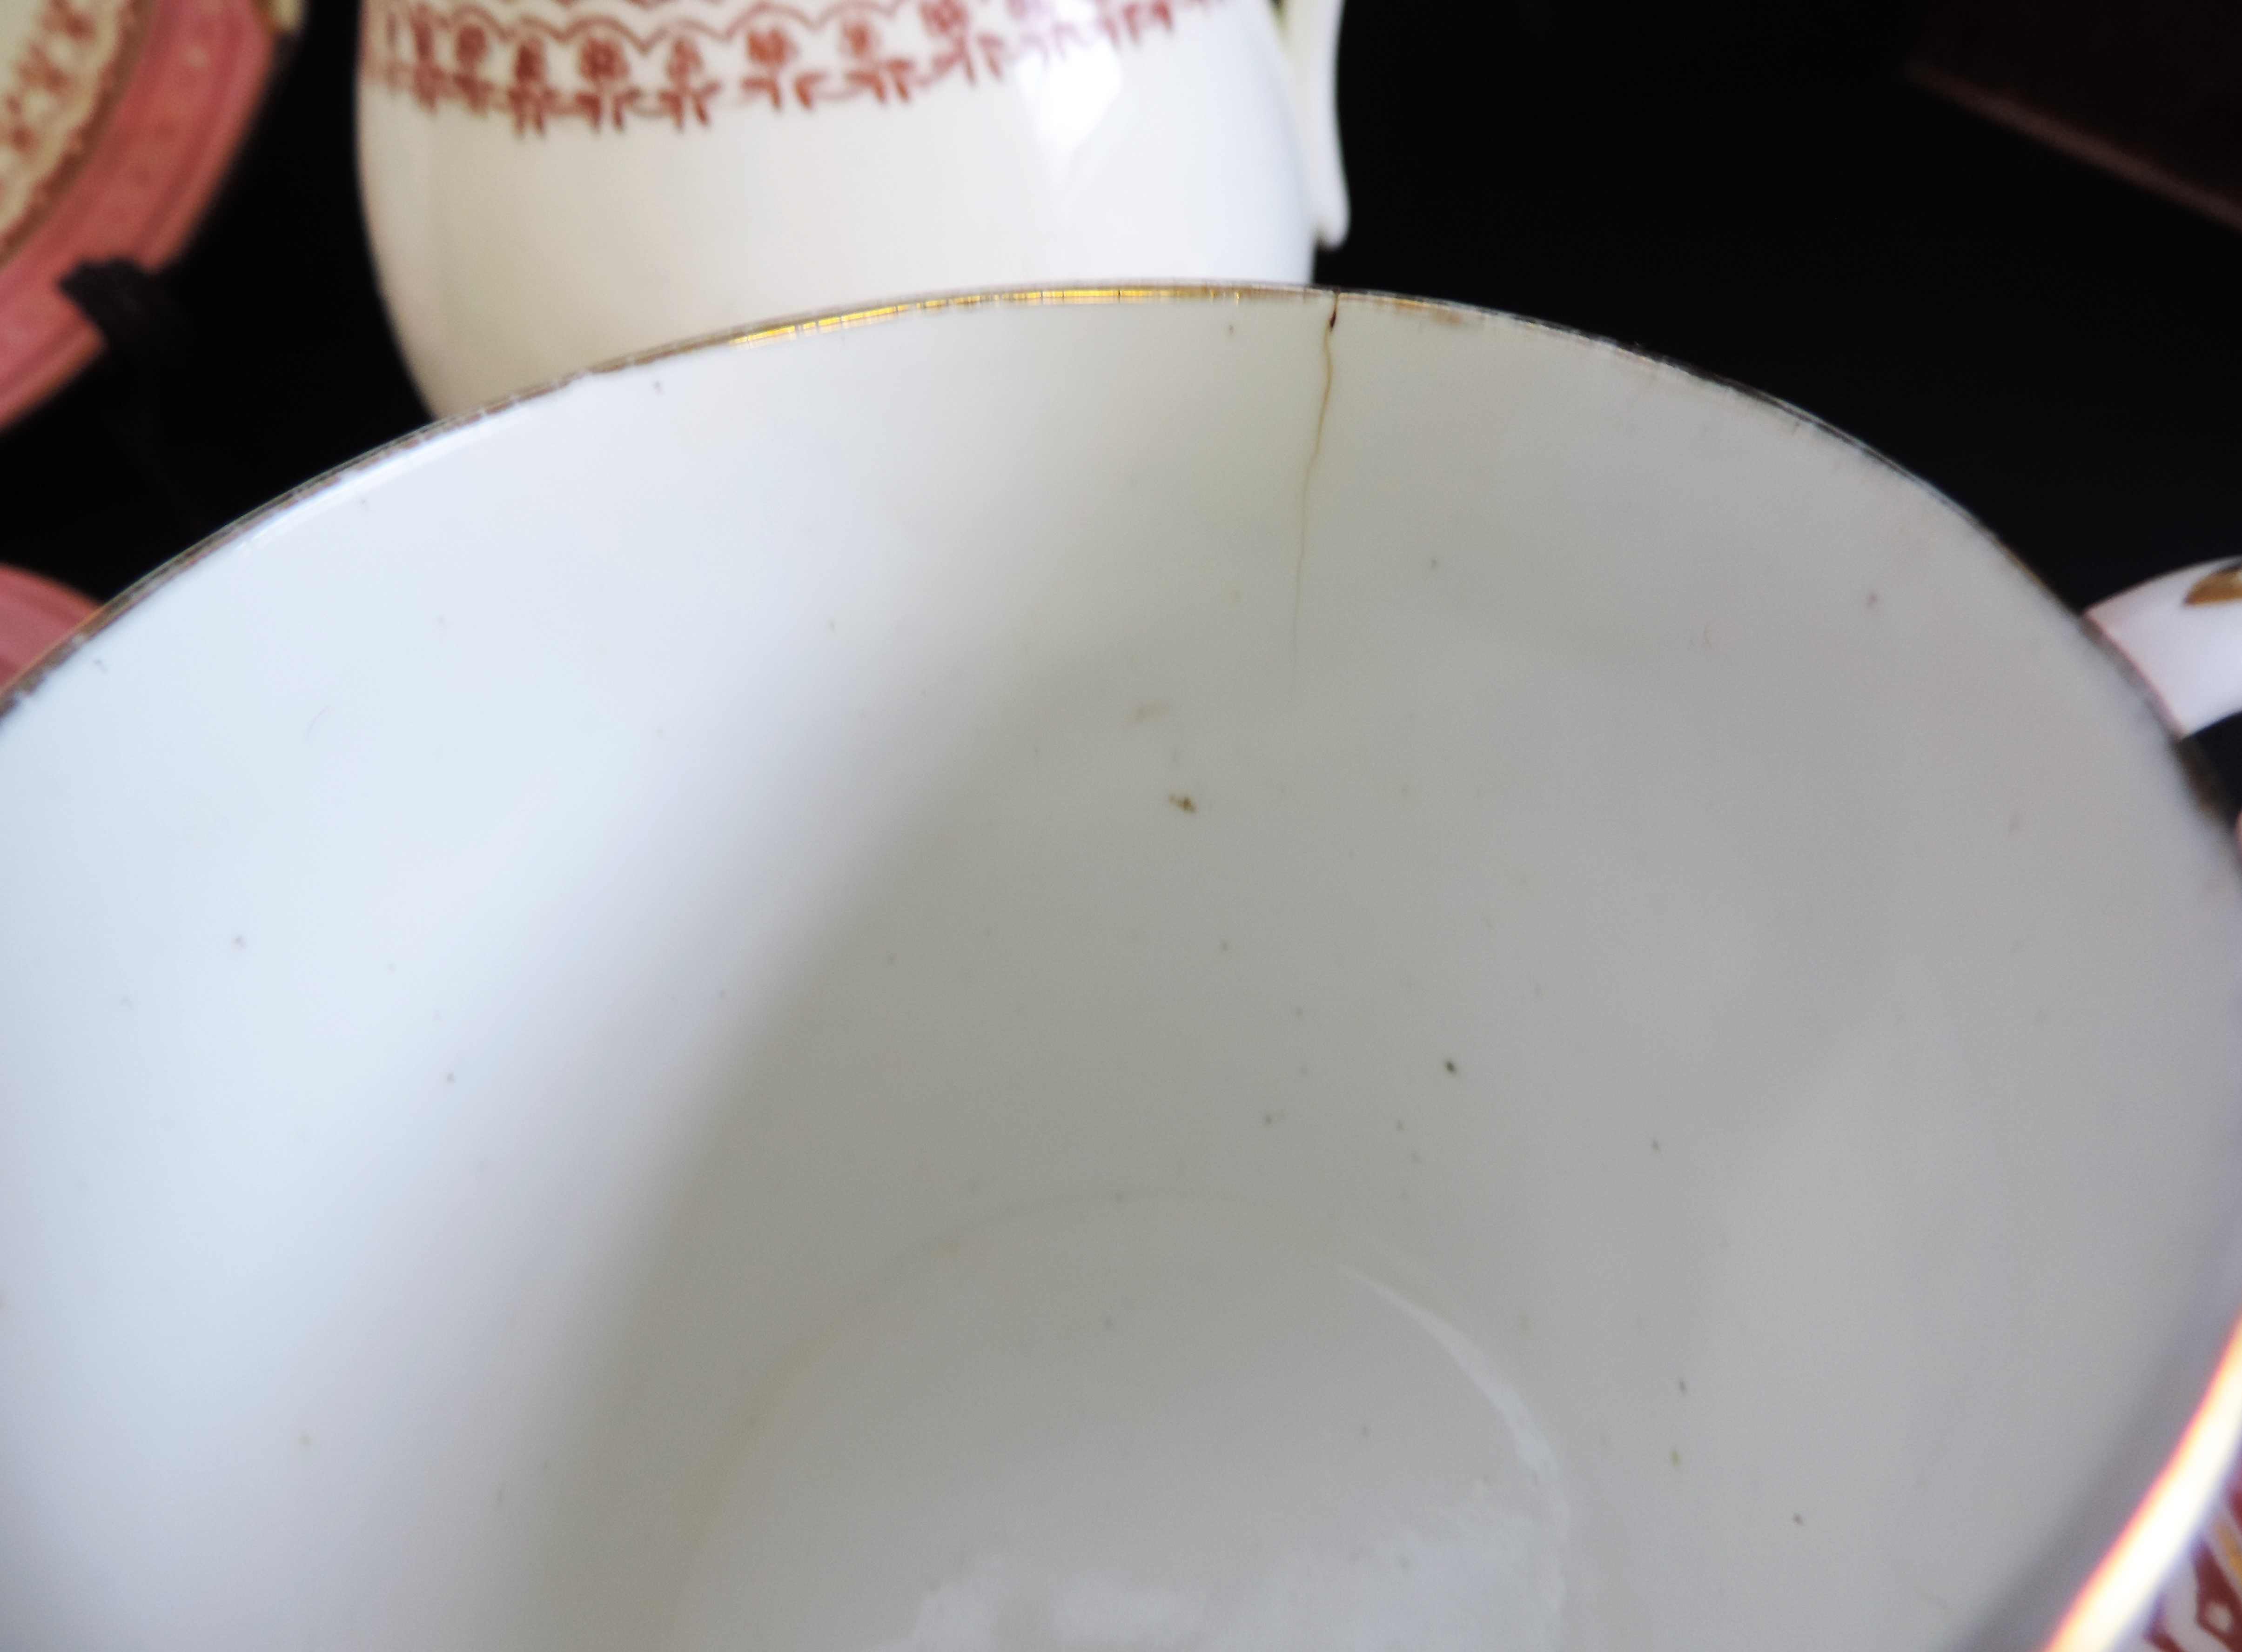 Vintage 19 piece Porcelain Breakfast/Tea Set for 4 People - Image 10 of 24